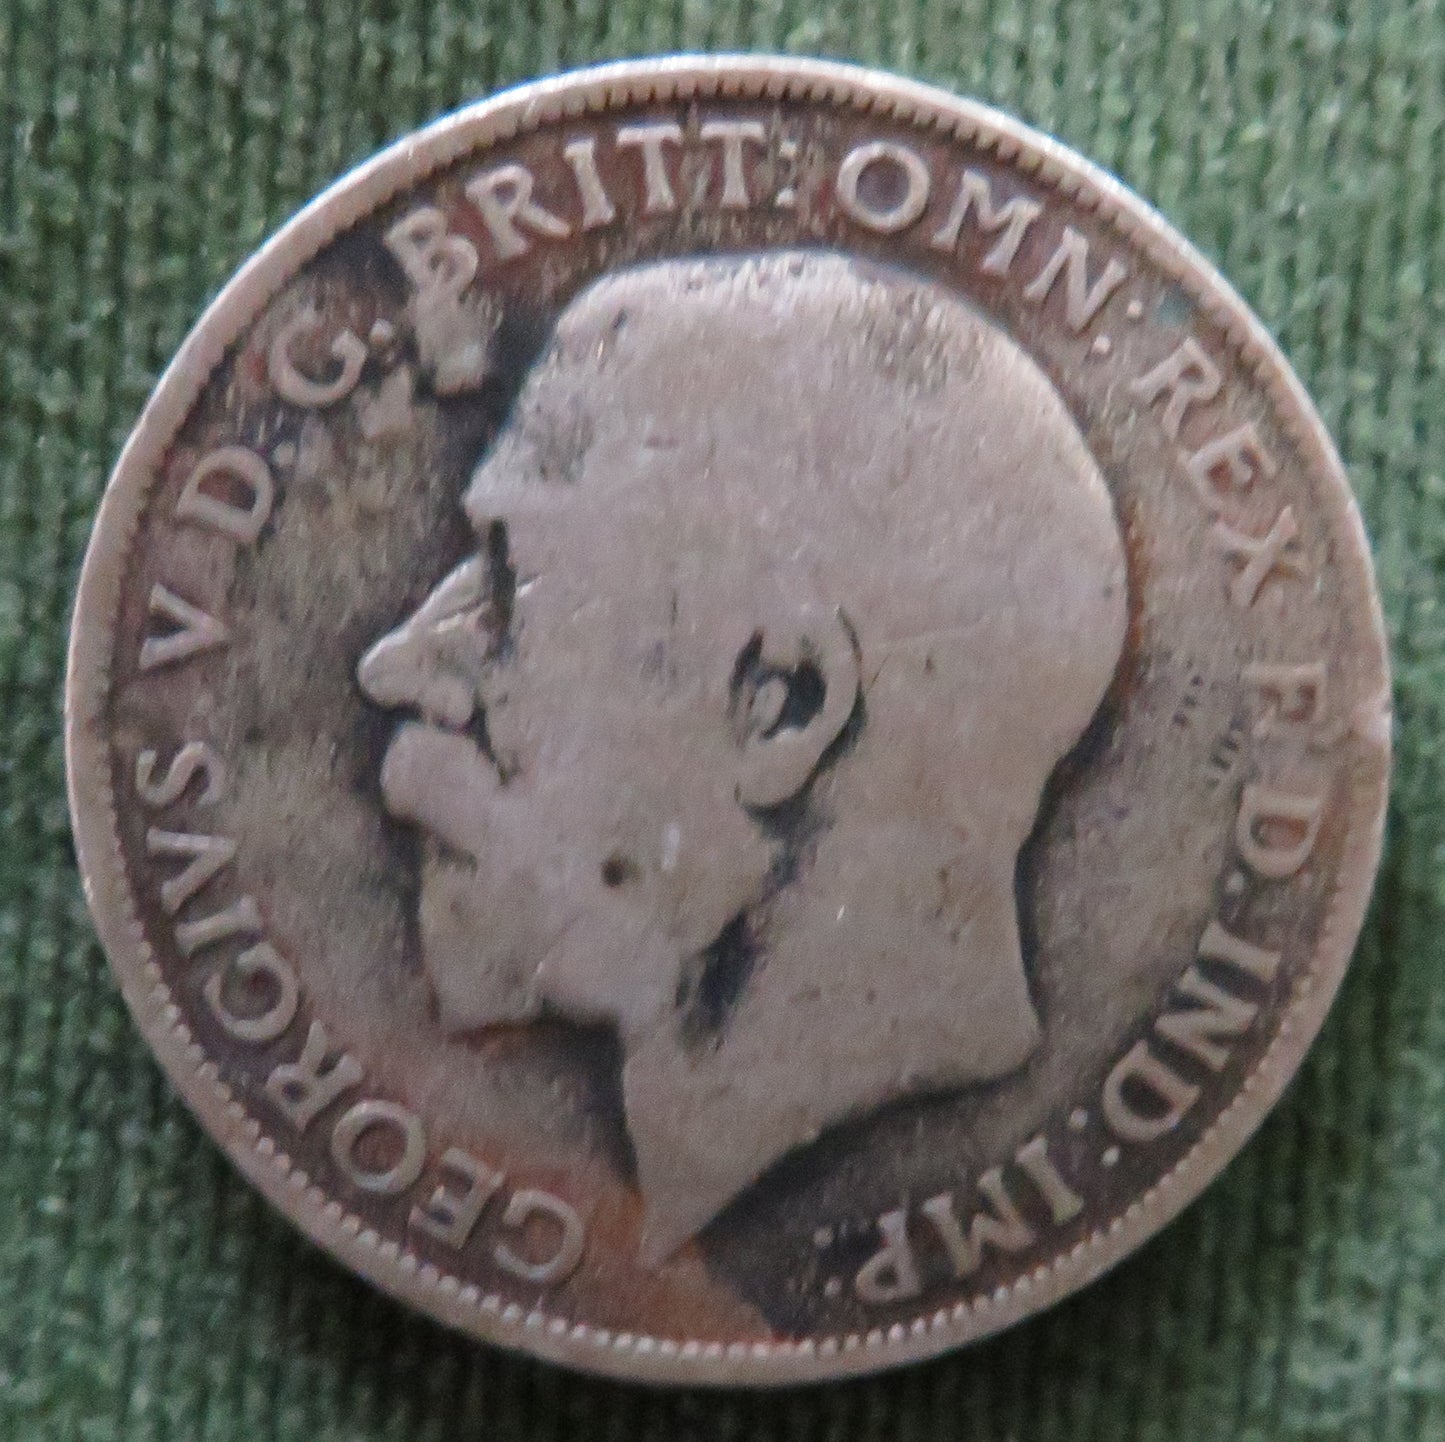 GB England 1921 Florin Coin - F